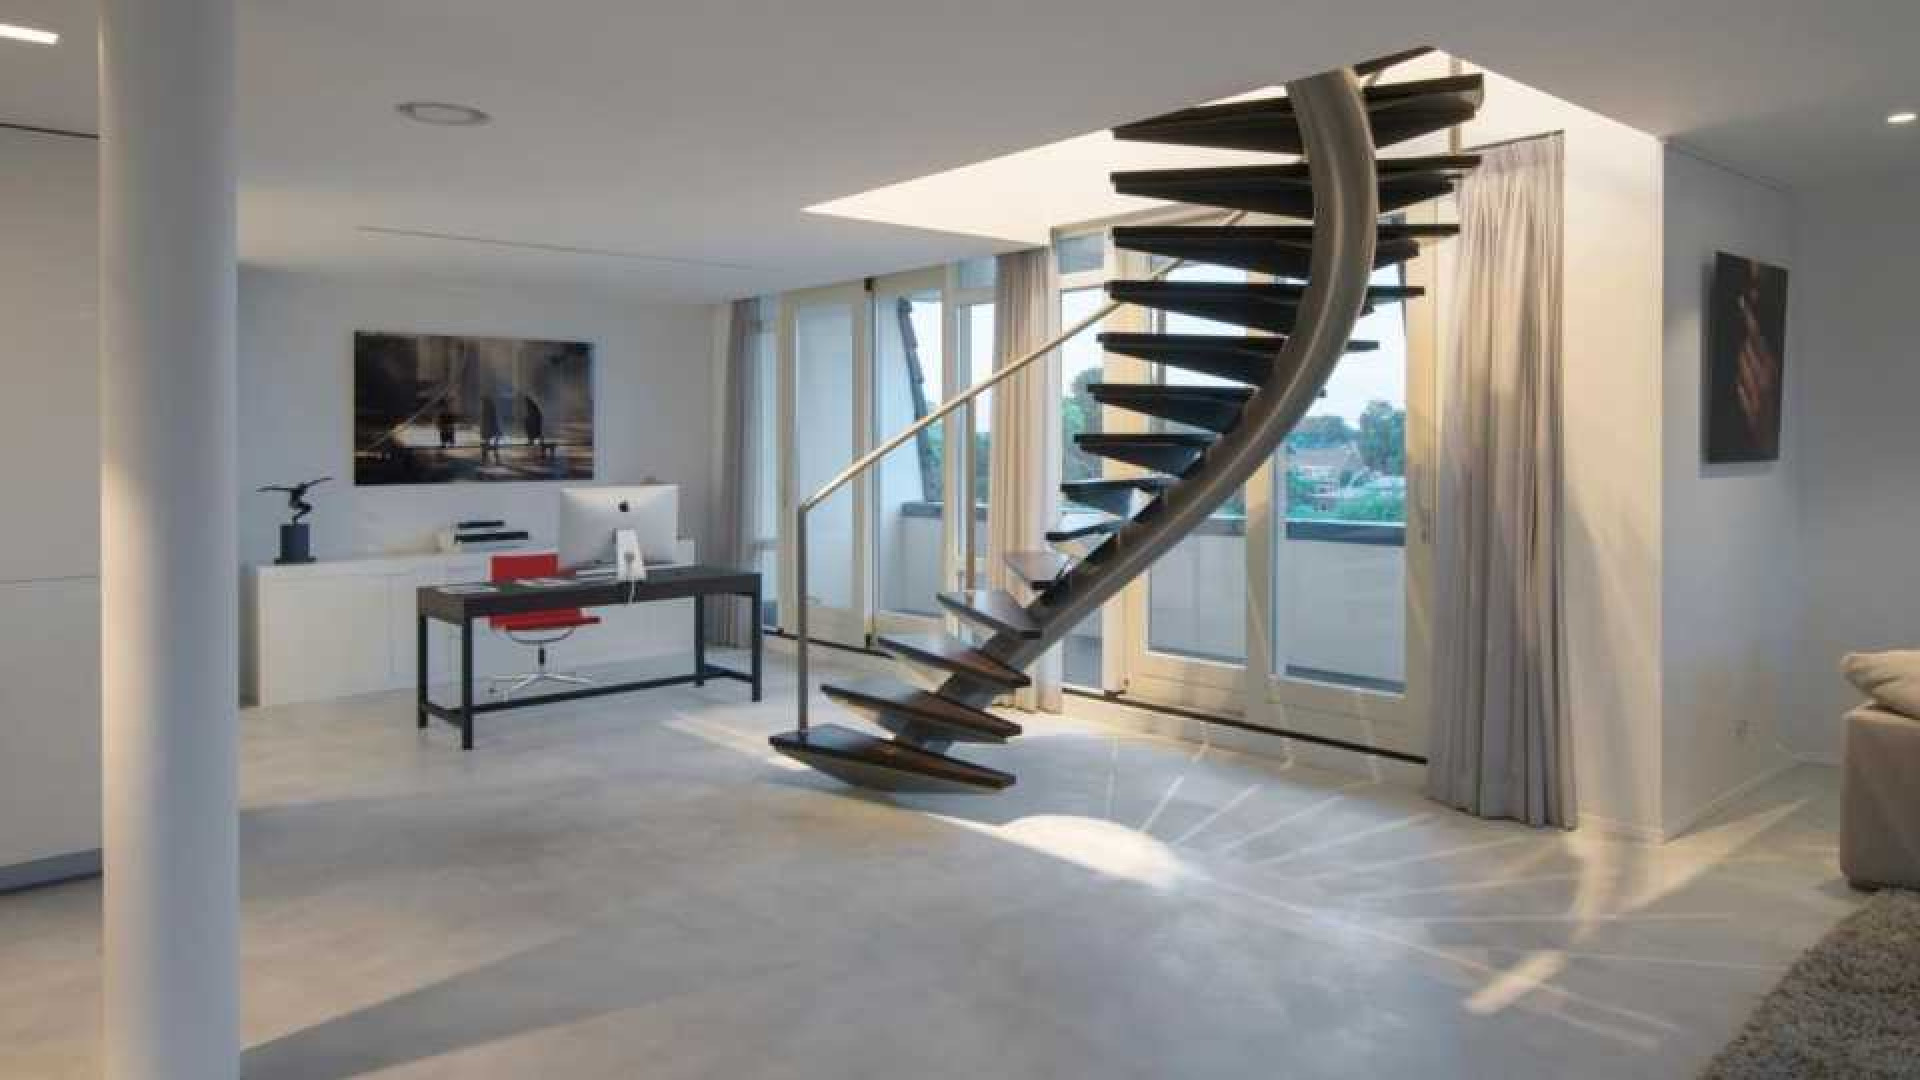 Binnenkijken in het waanzinnig luxe penthouse van Nederlands Elftal speler Denzel Dumfries. Zie foto's 4